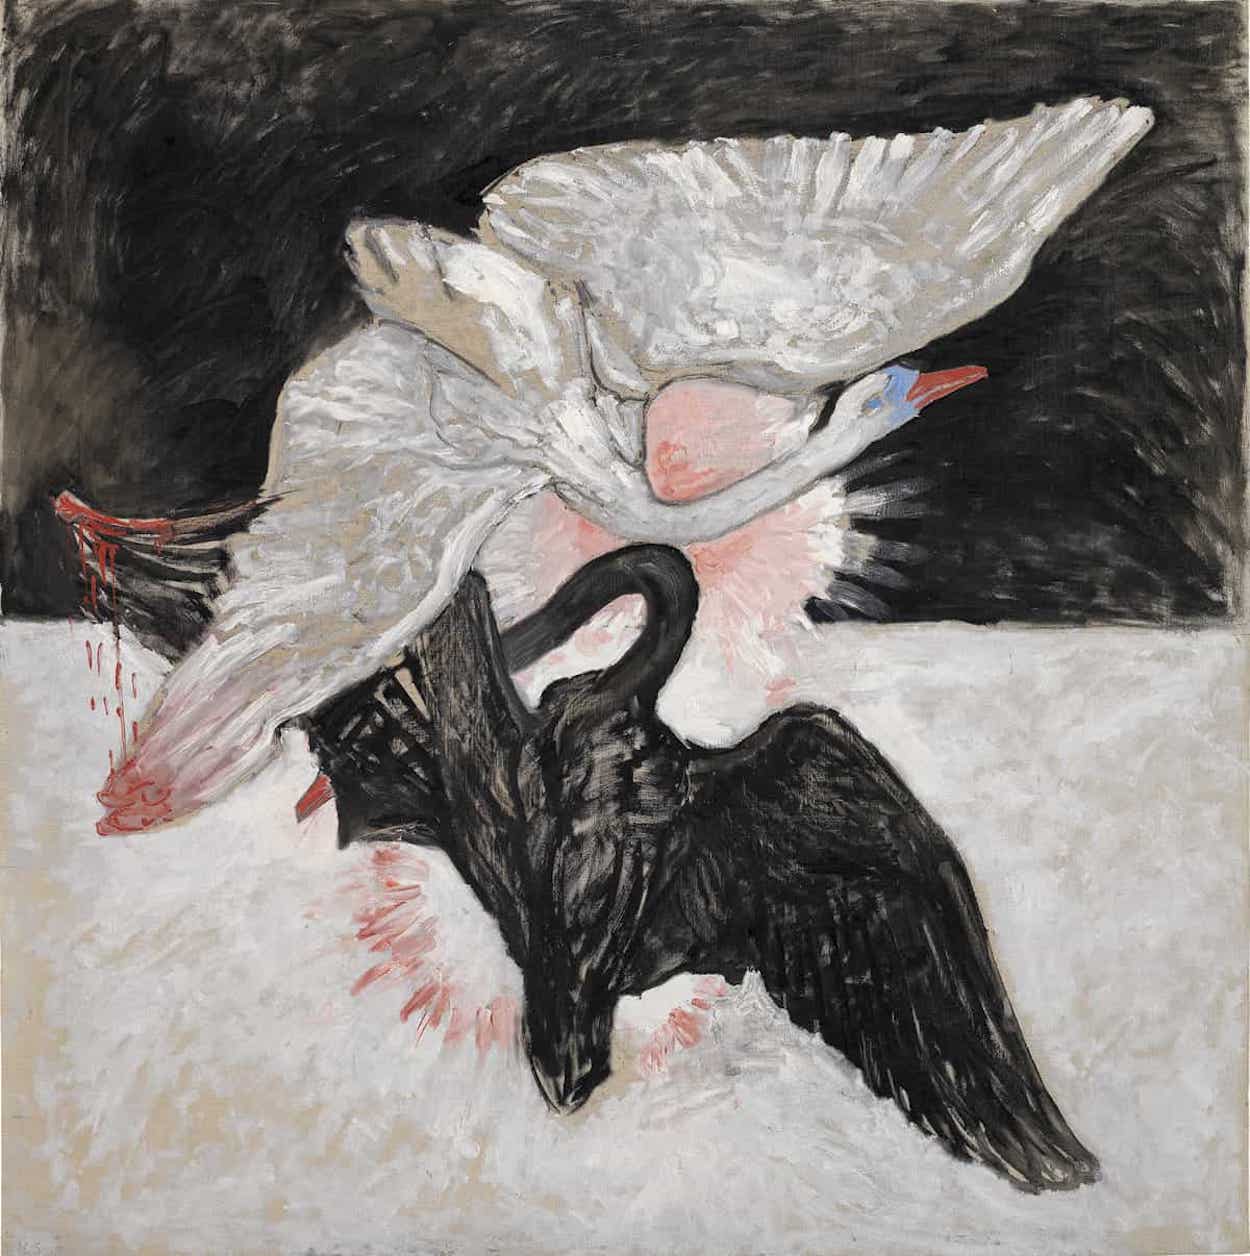 グループ IX/SUW, 白鳥, No. 6 by Hilma af Klint - 1915年 - 153 x 153 cm 